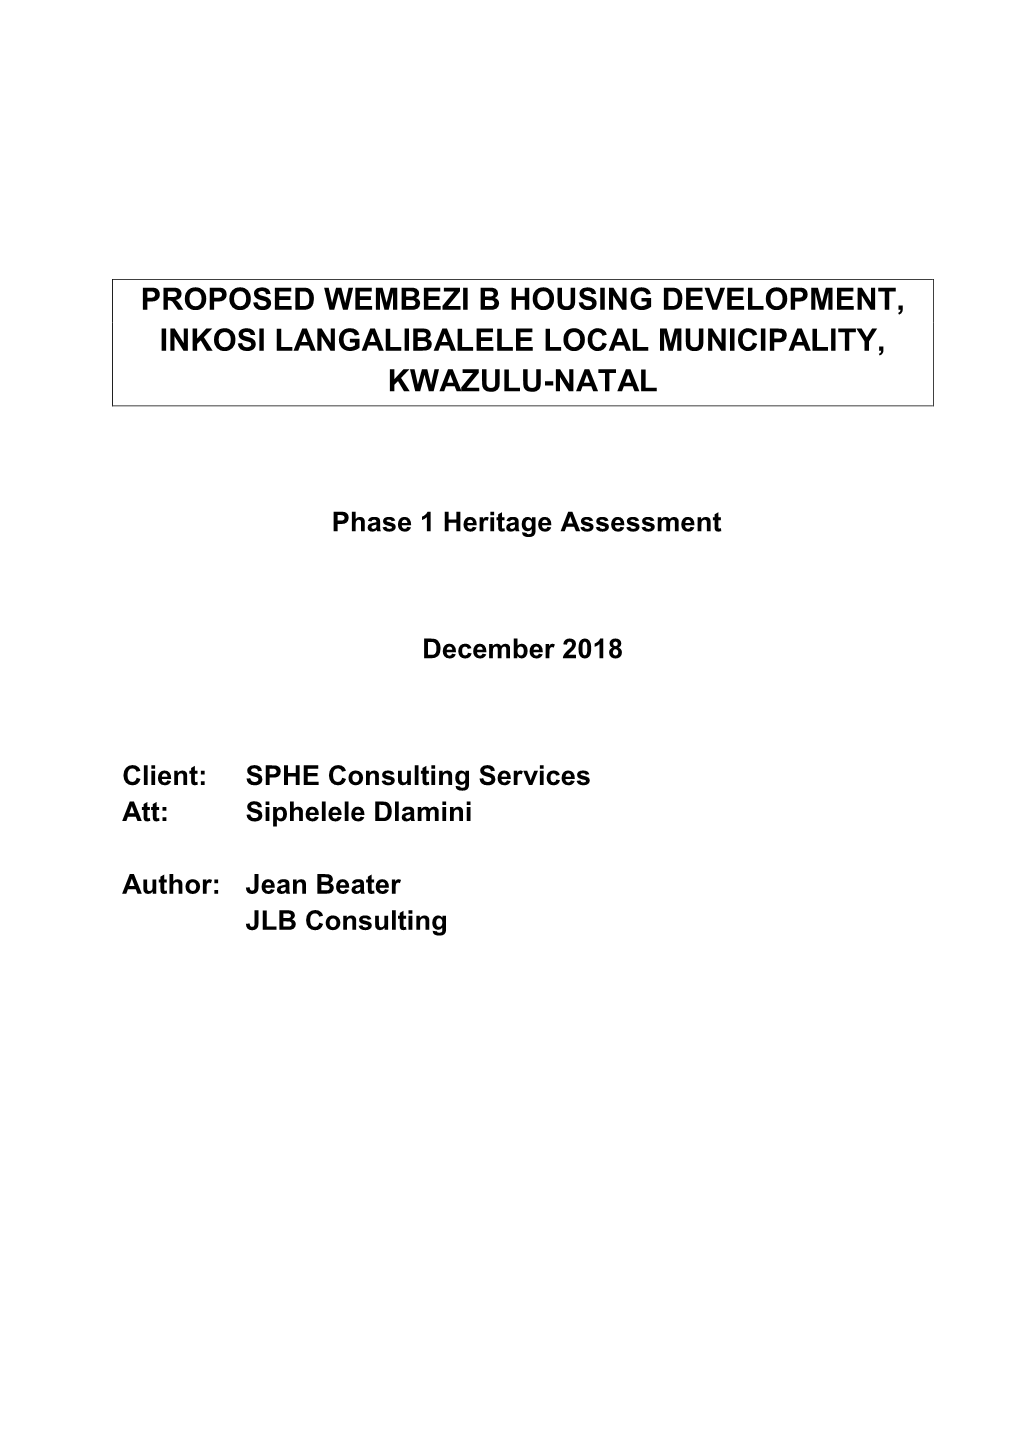 Proposed Wembezi B Housing Development, Inkosi Langalibalele Local Municipality, Kwazulu-Natal